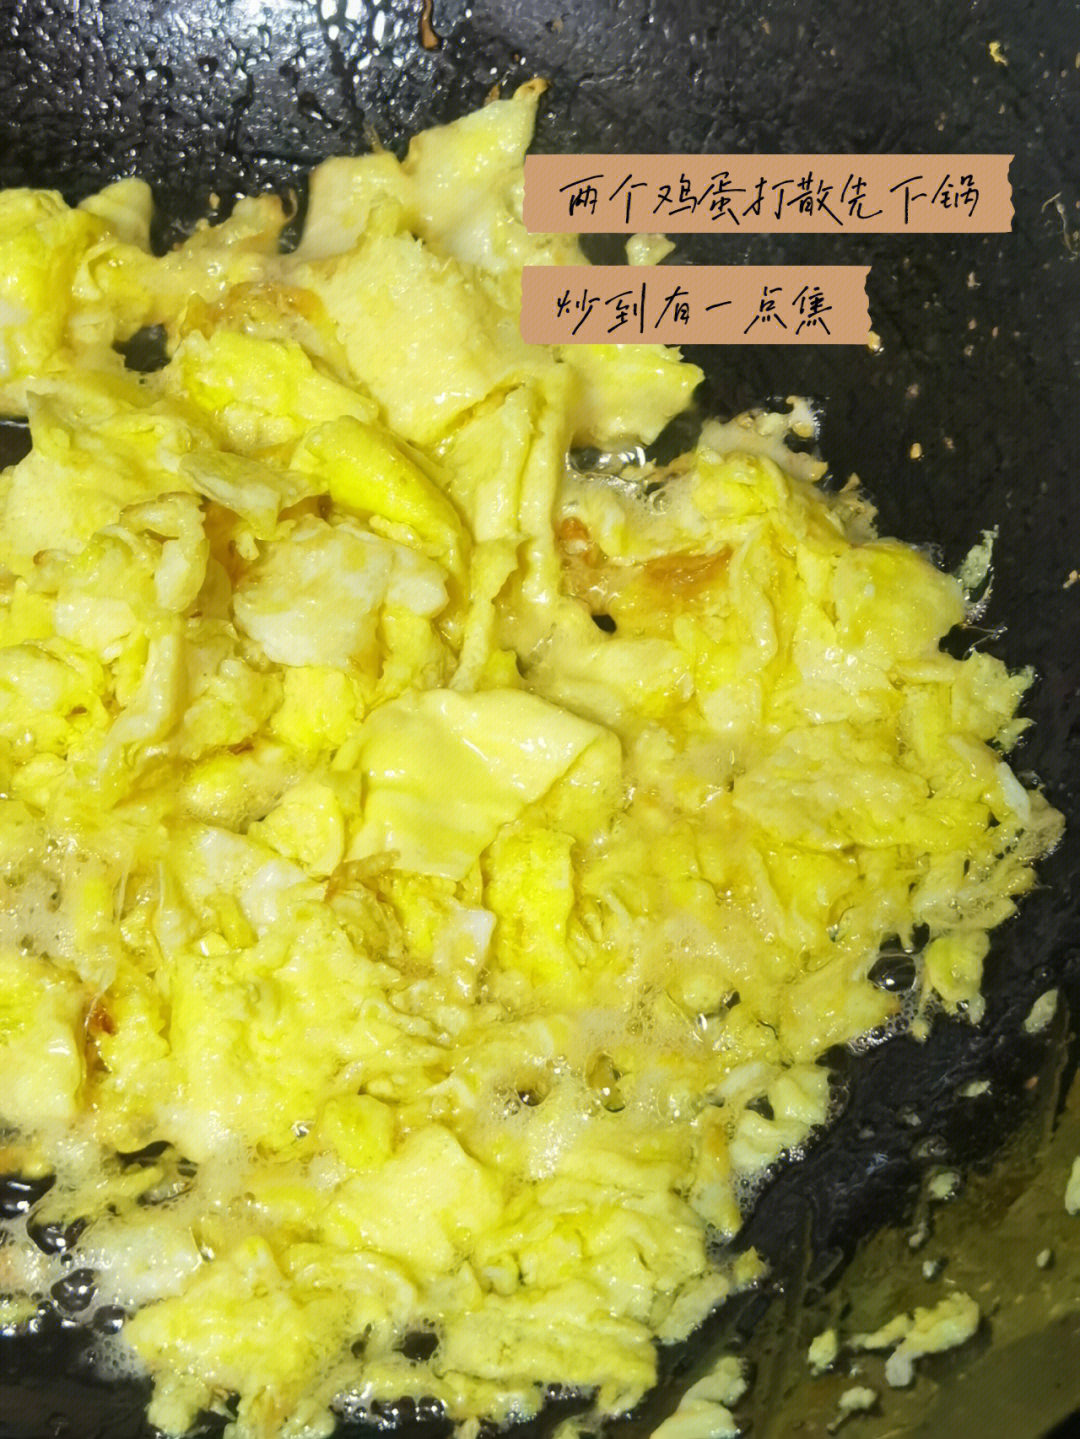 切一点小葱备用5开火炒鸡蛋,稍微定型的时候用筷子搅碎,炒到金黄6